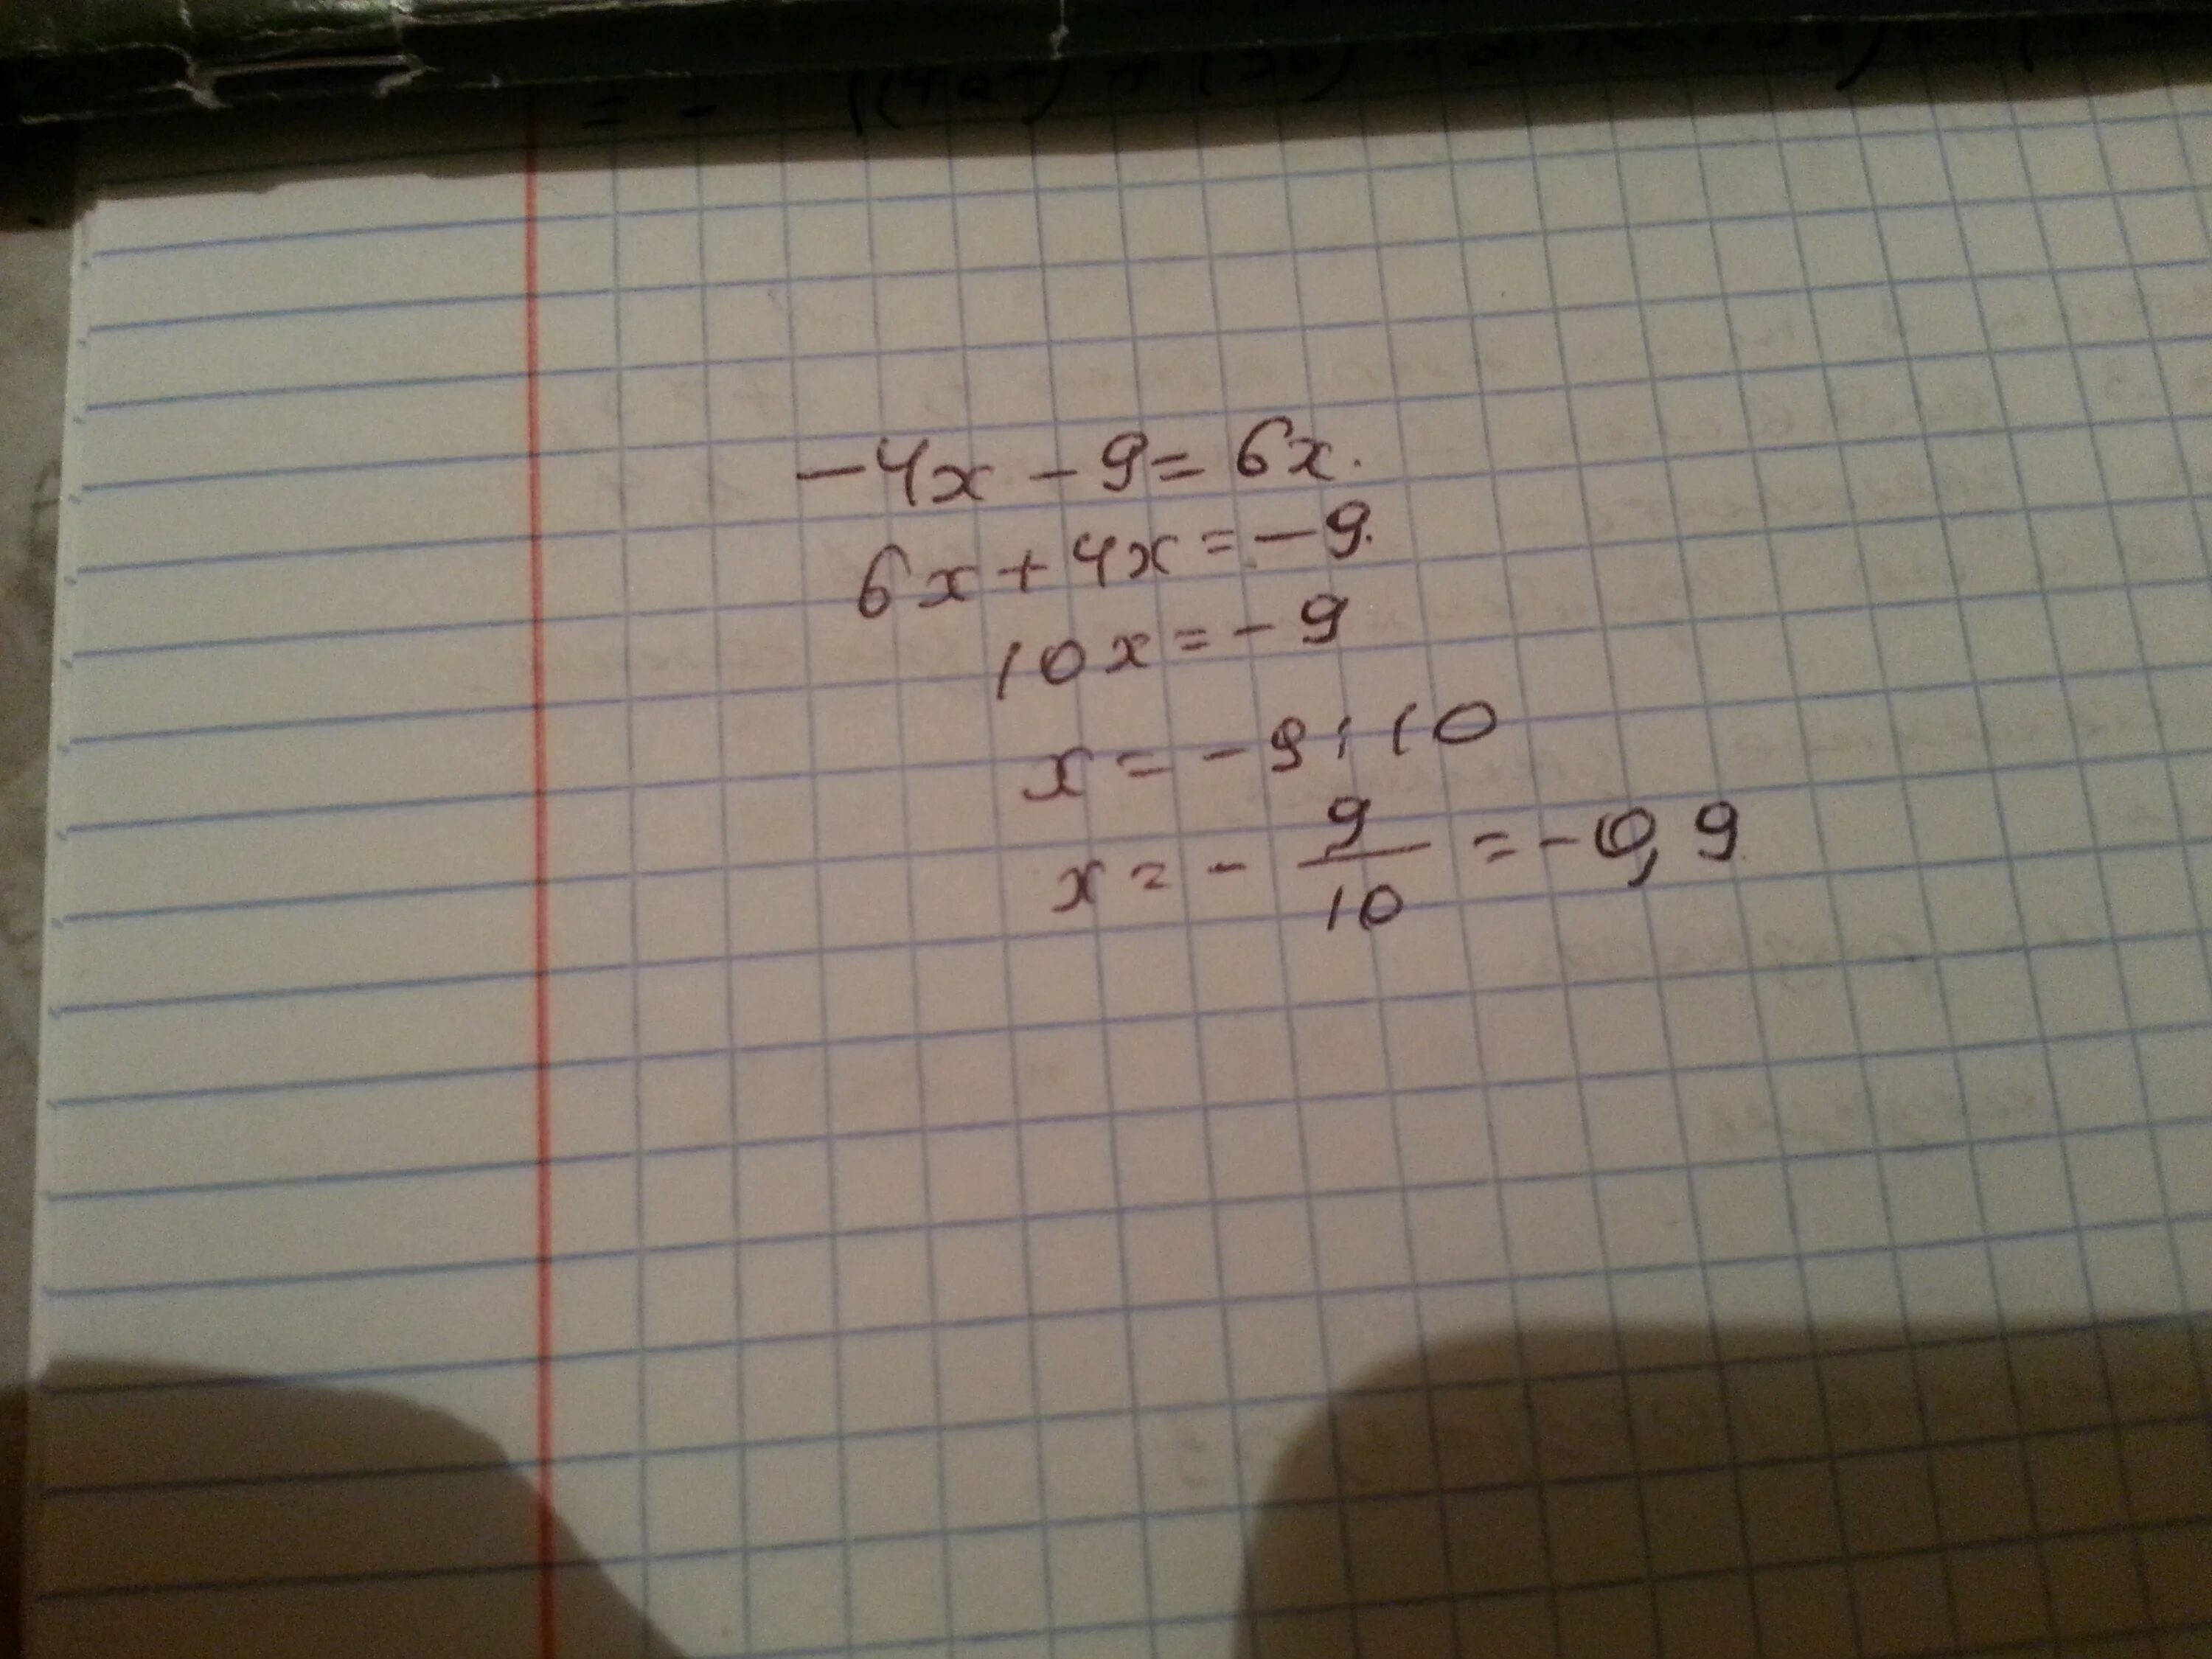 Найти корень уравнения 6х 4 4. Найдите корень уравнения 4х-9 6х. Найдите корень уравнения -4х - 9х=6х. Ответы Найдите корень уравнения 4(x-6)=х-9. Найти корень уравнения 4[х-6]=х-9.